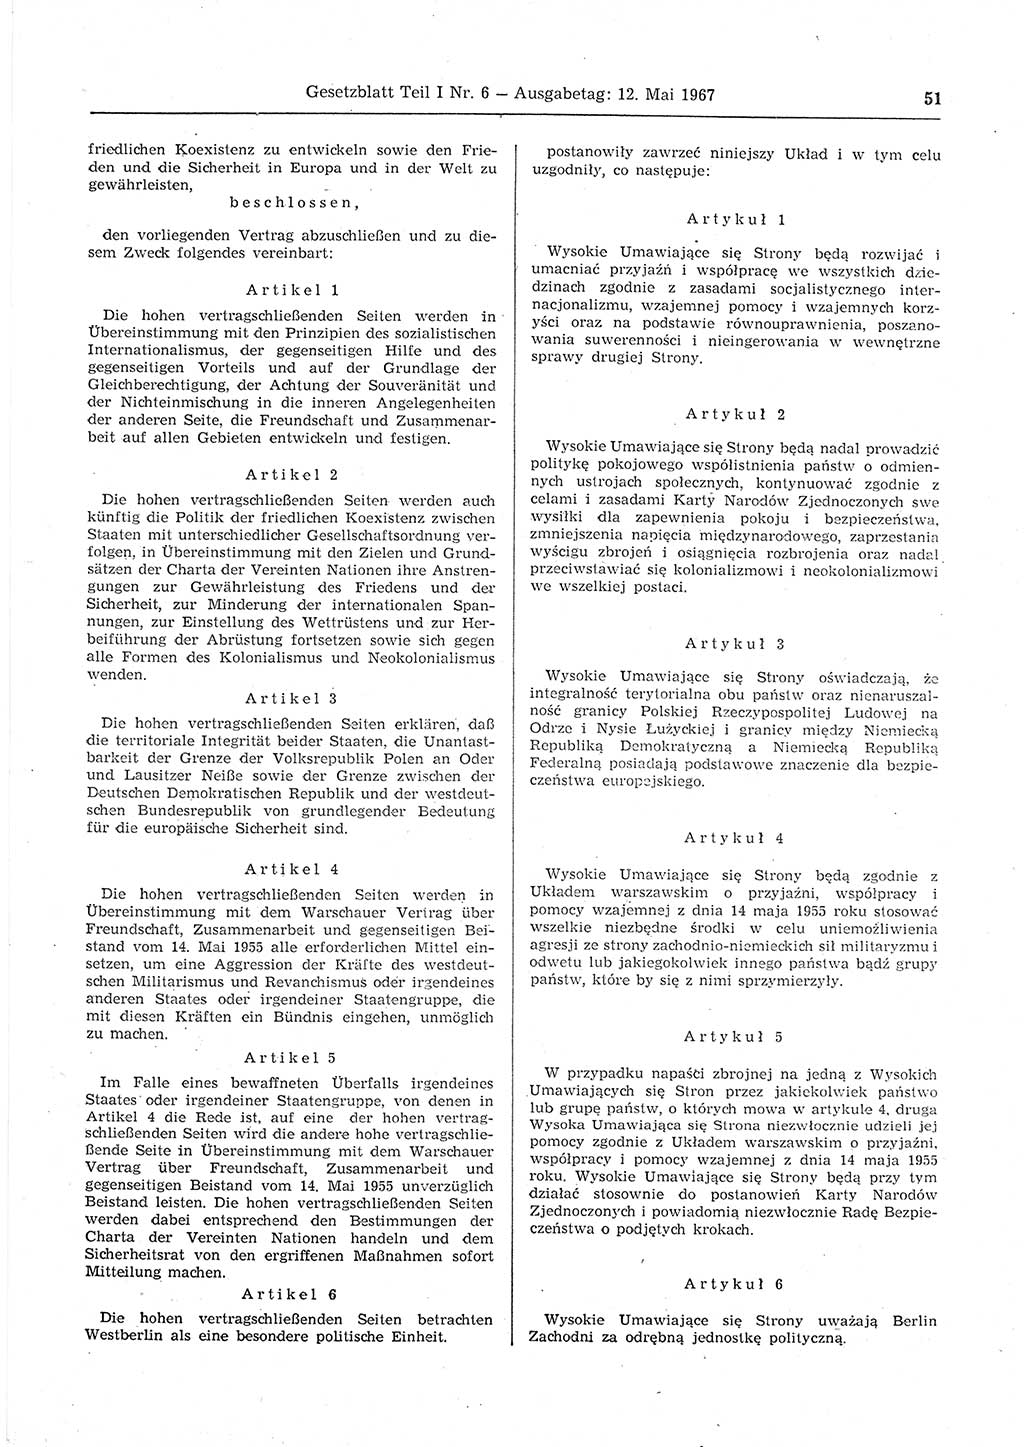 Gesetzblatt (GBl.) der Deutschen Demokratischen Republik (DDR) Teil Ⅰ 1967, Seite 51 (GBl. DDR Ⅰ 1967, S. 51)